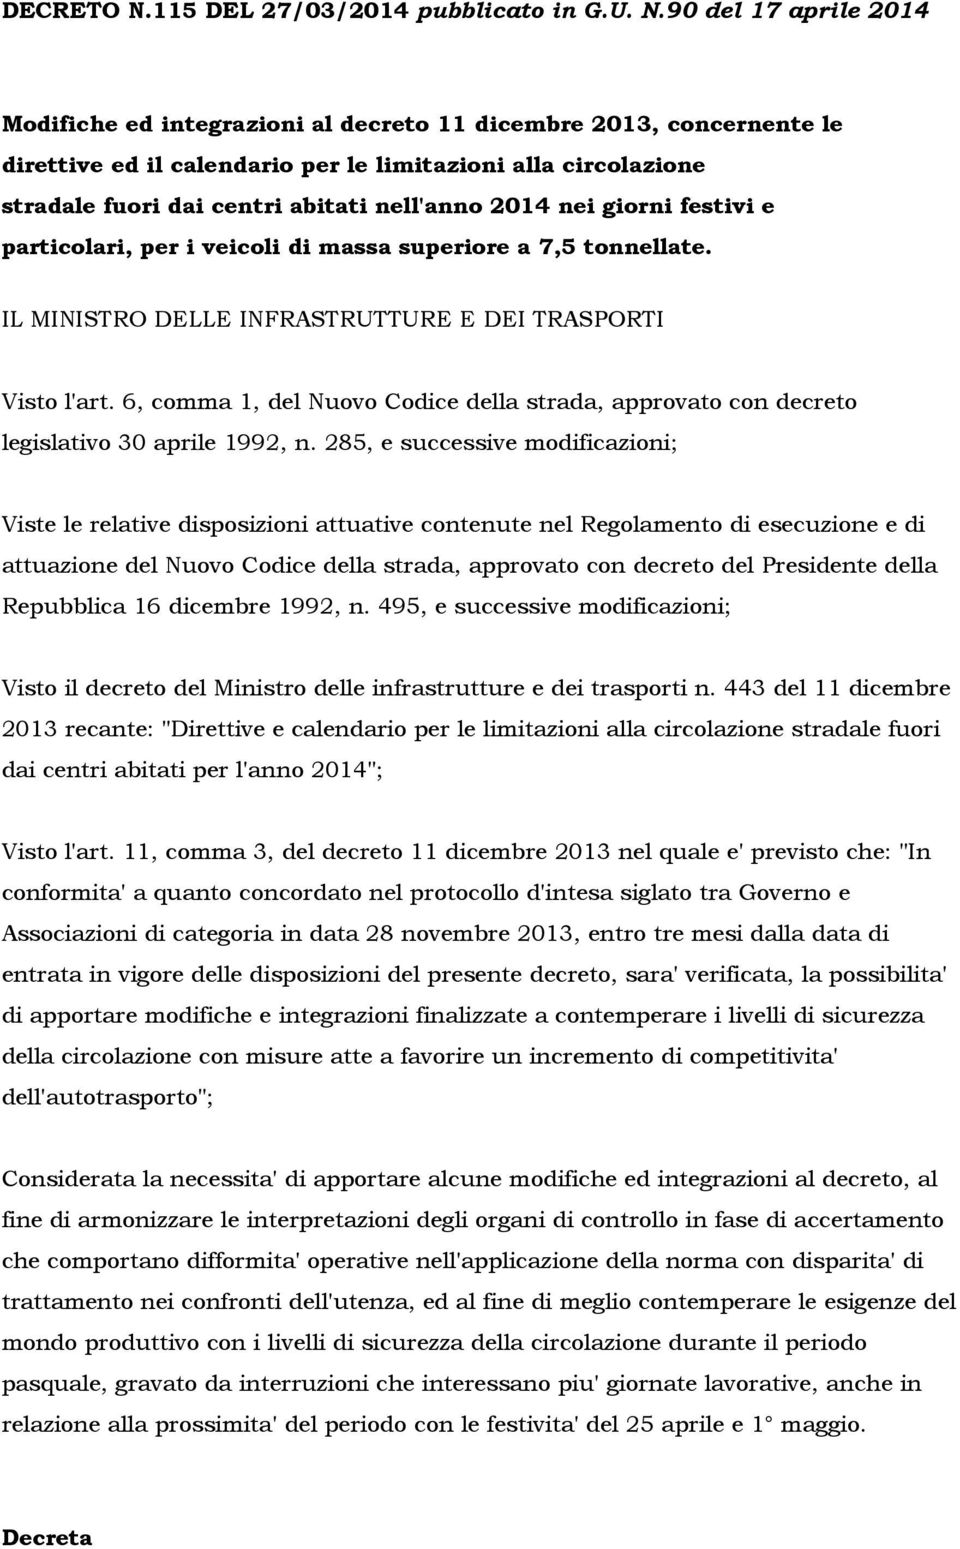 90 del 17 aprile 2014 Modifiche ed integrazioni al decreto 11 dicembre 2013, concernente le direttive ed il calendario per le limitazioni alla circolazione stradale fuori dai centri abitati nell'anno